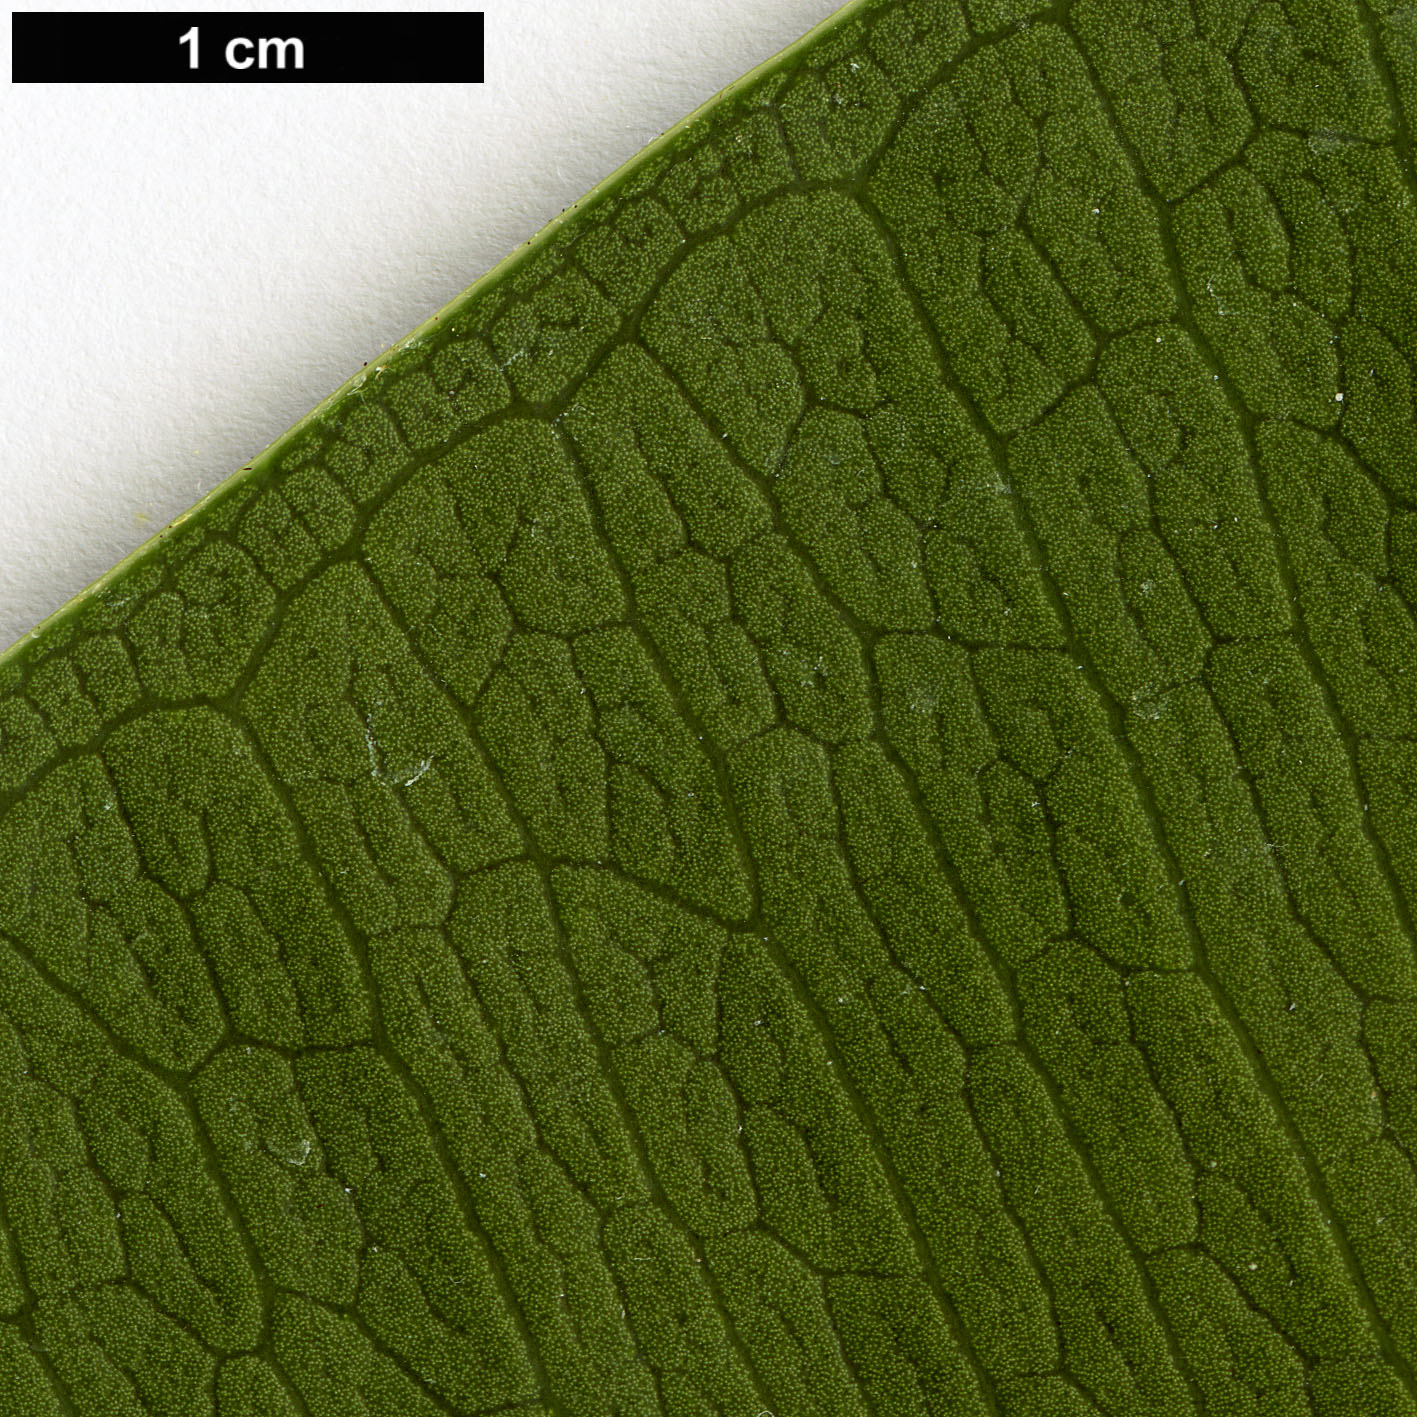 High resolution image: Family: Moraceae - Genus: Ficus - Taxon: elastica